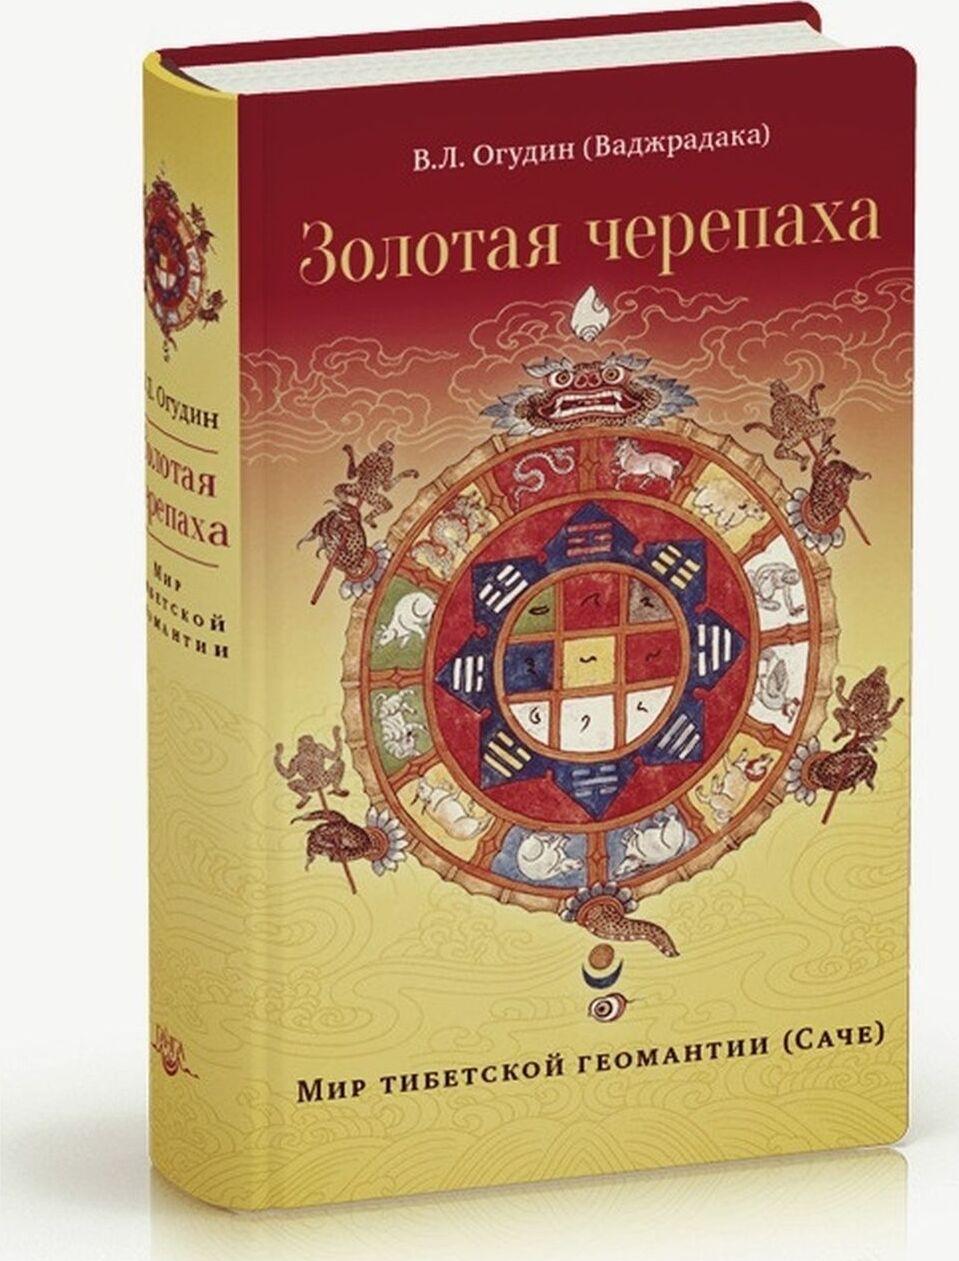 Carte Золотая черепаха. Мир тибетской геомантии (Саче) В. Огудин